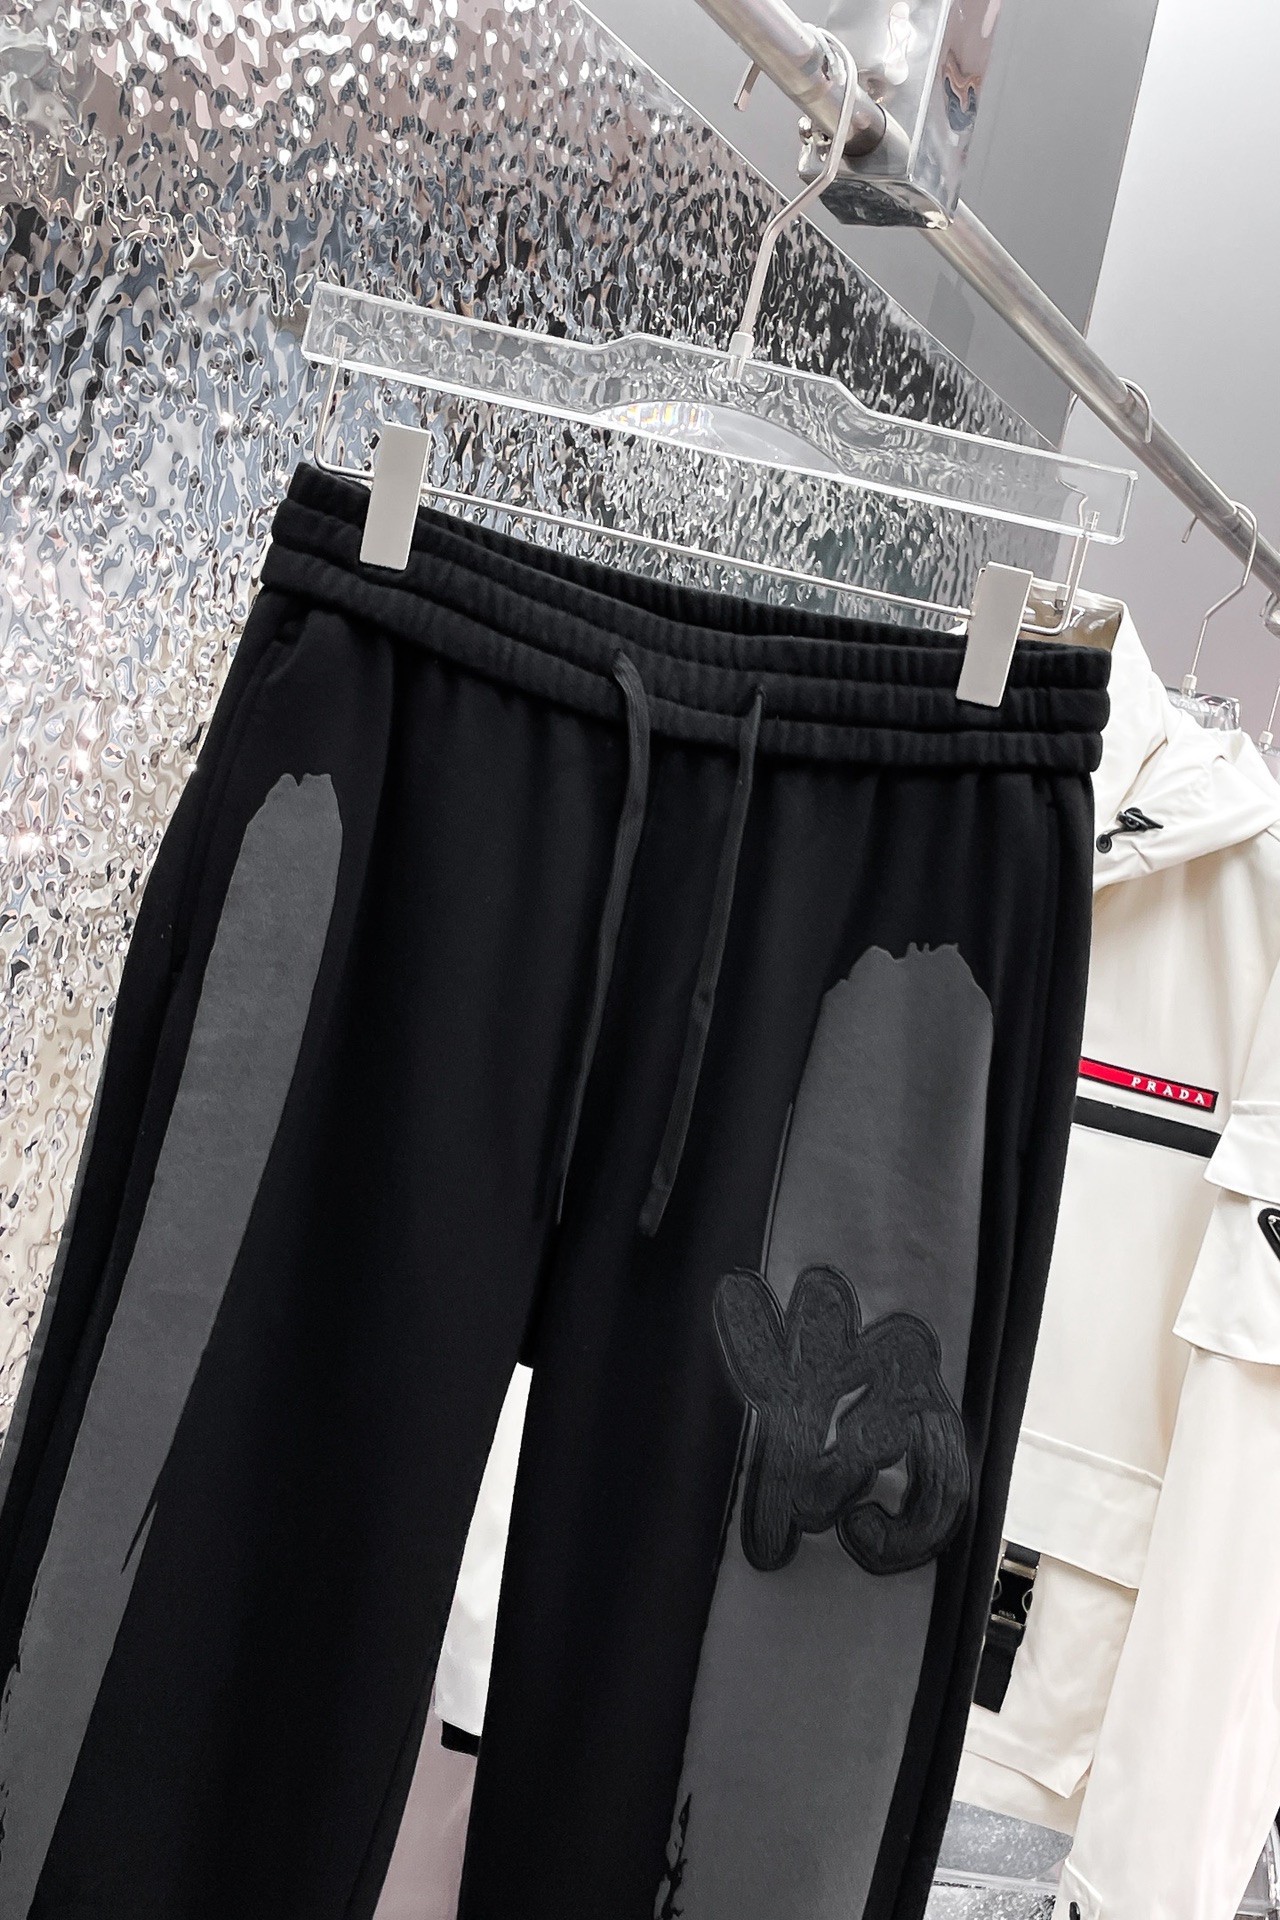 Y32024春季新品休闲裤官网同步发售裤身工艺设计进口客供辅料面料定制代工厂出品免检！每个细节做到极致原